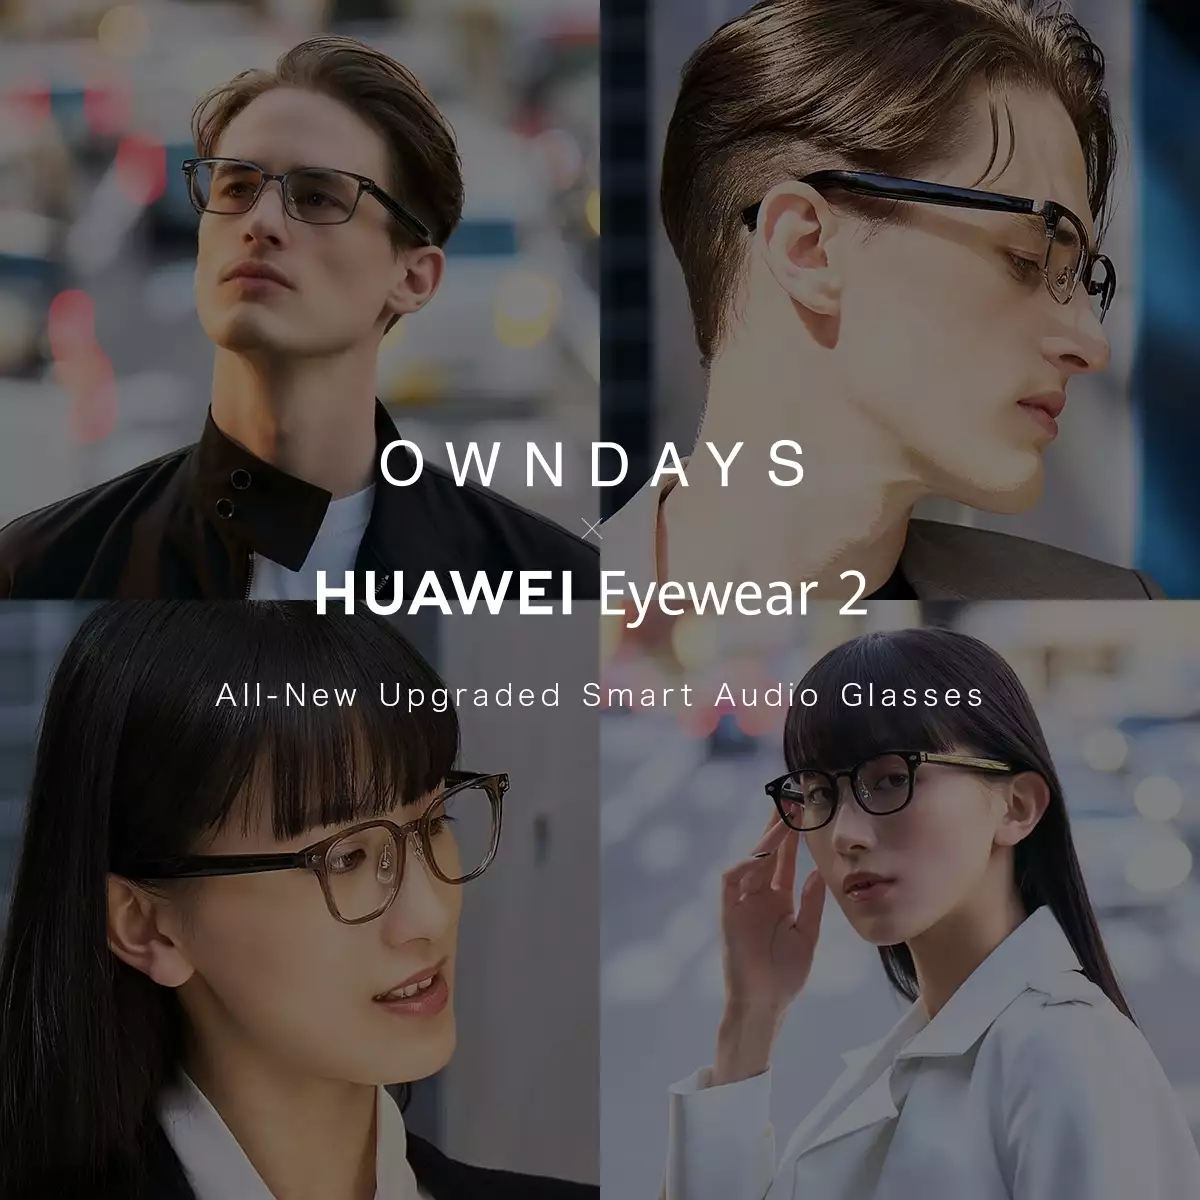 OWNDAYS × HUAWEI Eyewear2